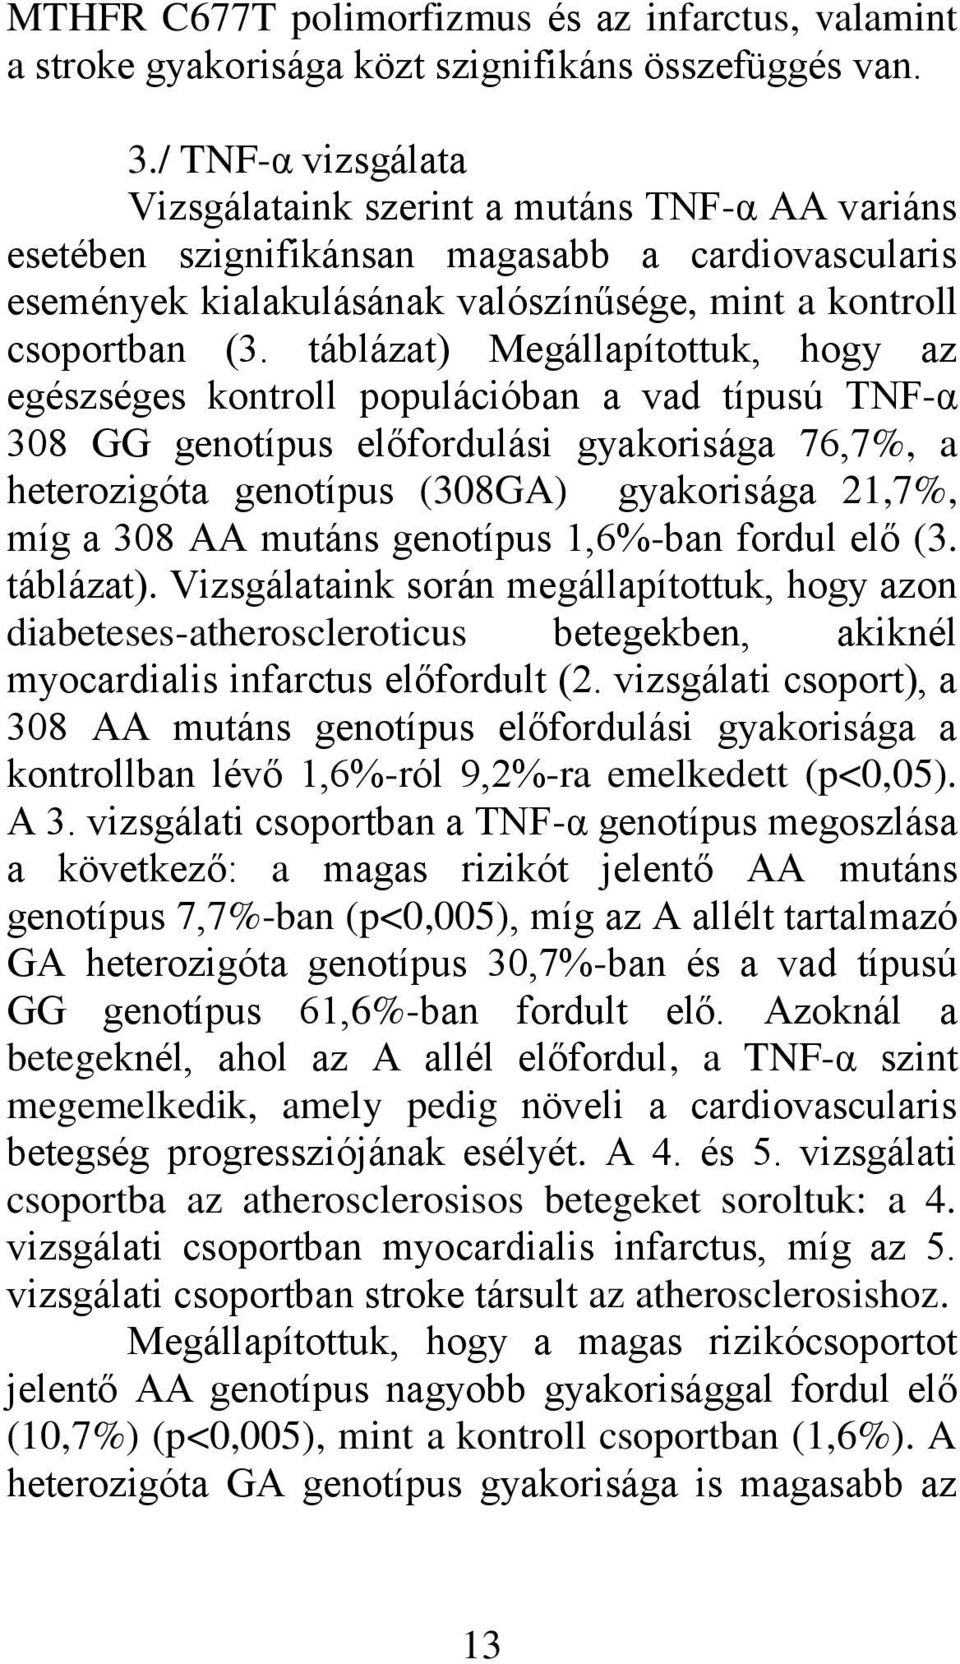 táblázat) Megállapítottuk, hogy az egészséges kontroll populációban a vad típusú TNF-α 308 GG genotípus előfordulási gyakorisága 76,7%, a heterozigóta genotípus (308GA) gyakorisága 21,7%, míg a 308